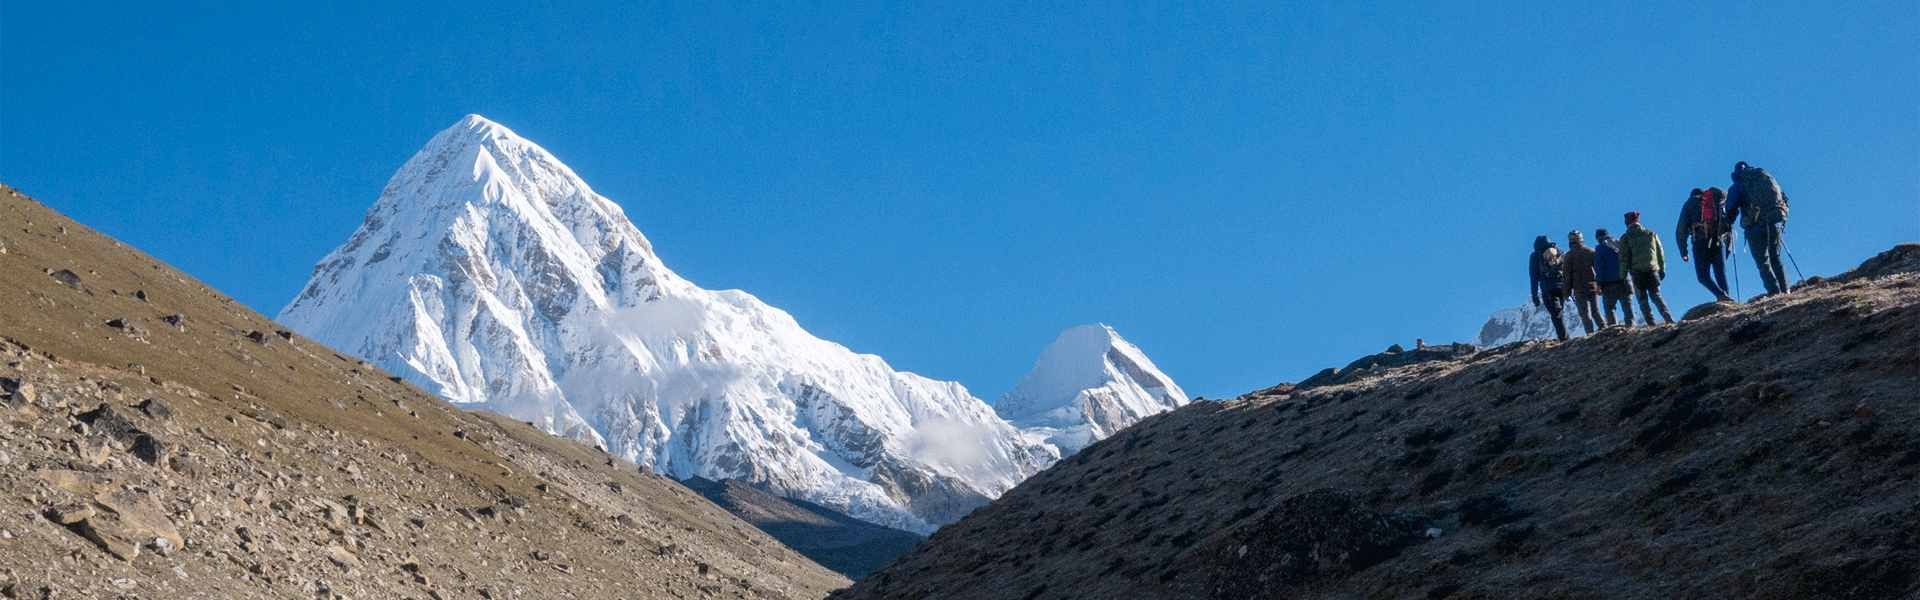 Everest base camp trek, Trekking Planner Inc.